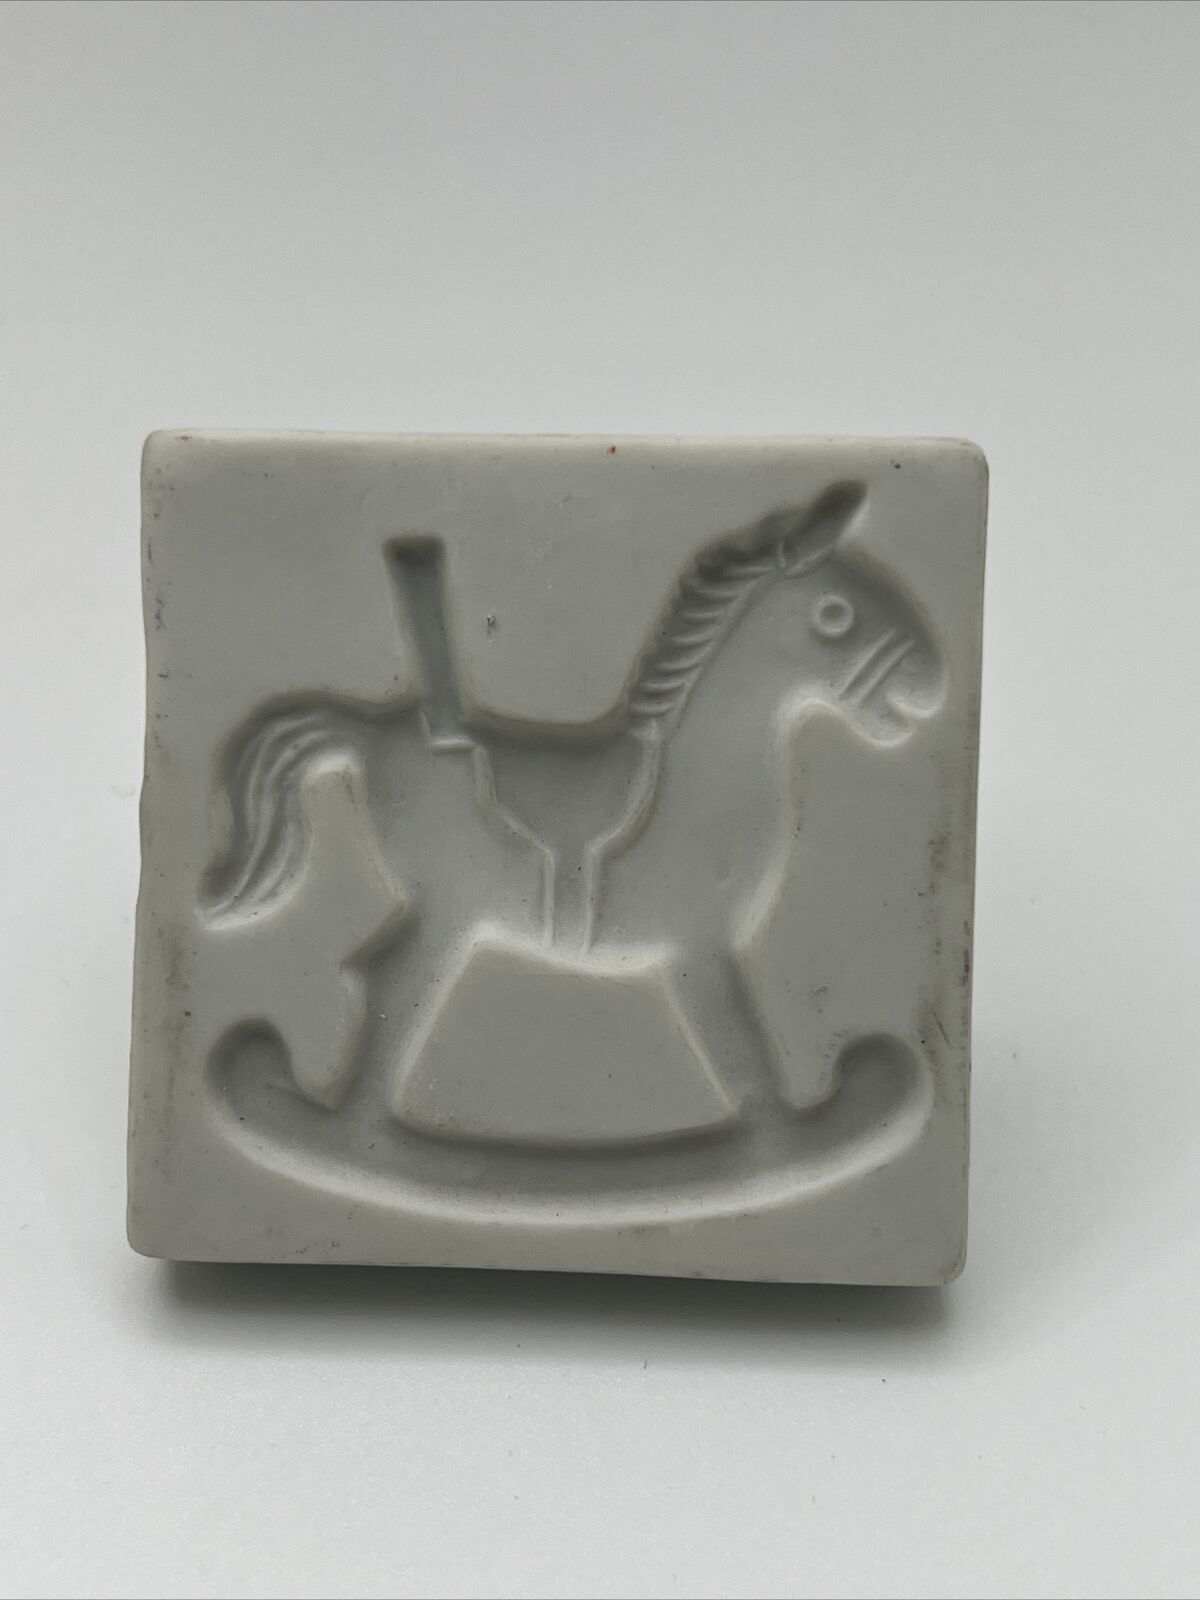 Vtg Rocking Horse Buckingham Galleries Fine Porcelain Cookie Press Stamp Japan 